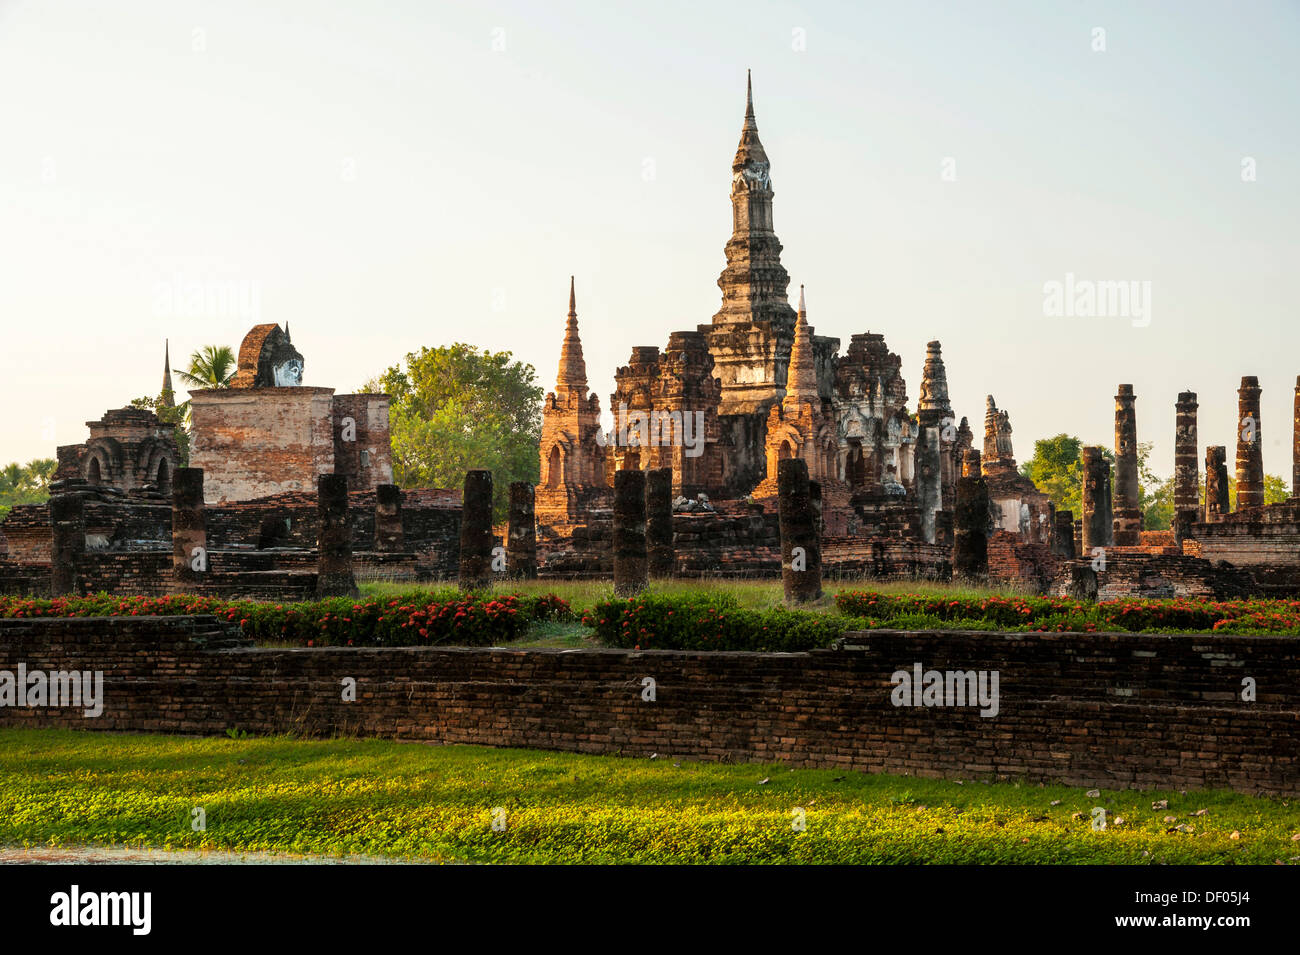 Chedi, Wat Mahathat temple, Parc historique de Sukhothaï, site du patrimoine mondial de l'UNESCO, dans le Nord de la Thaïlande, la Thaïlande, l'Asie Banque D'Images